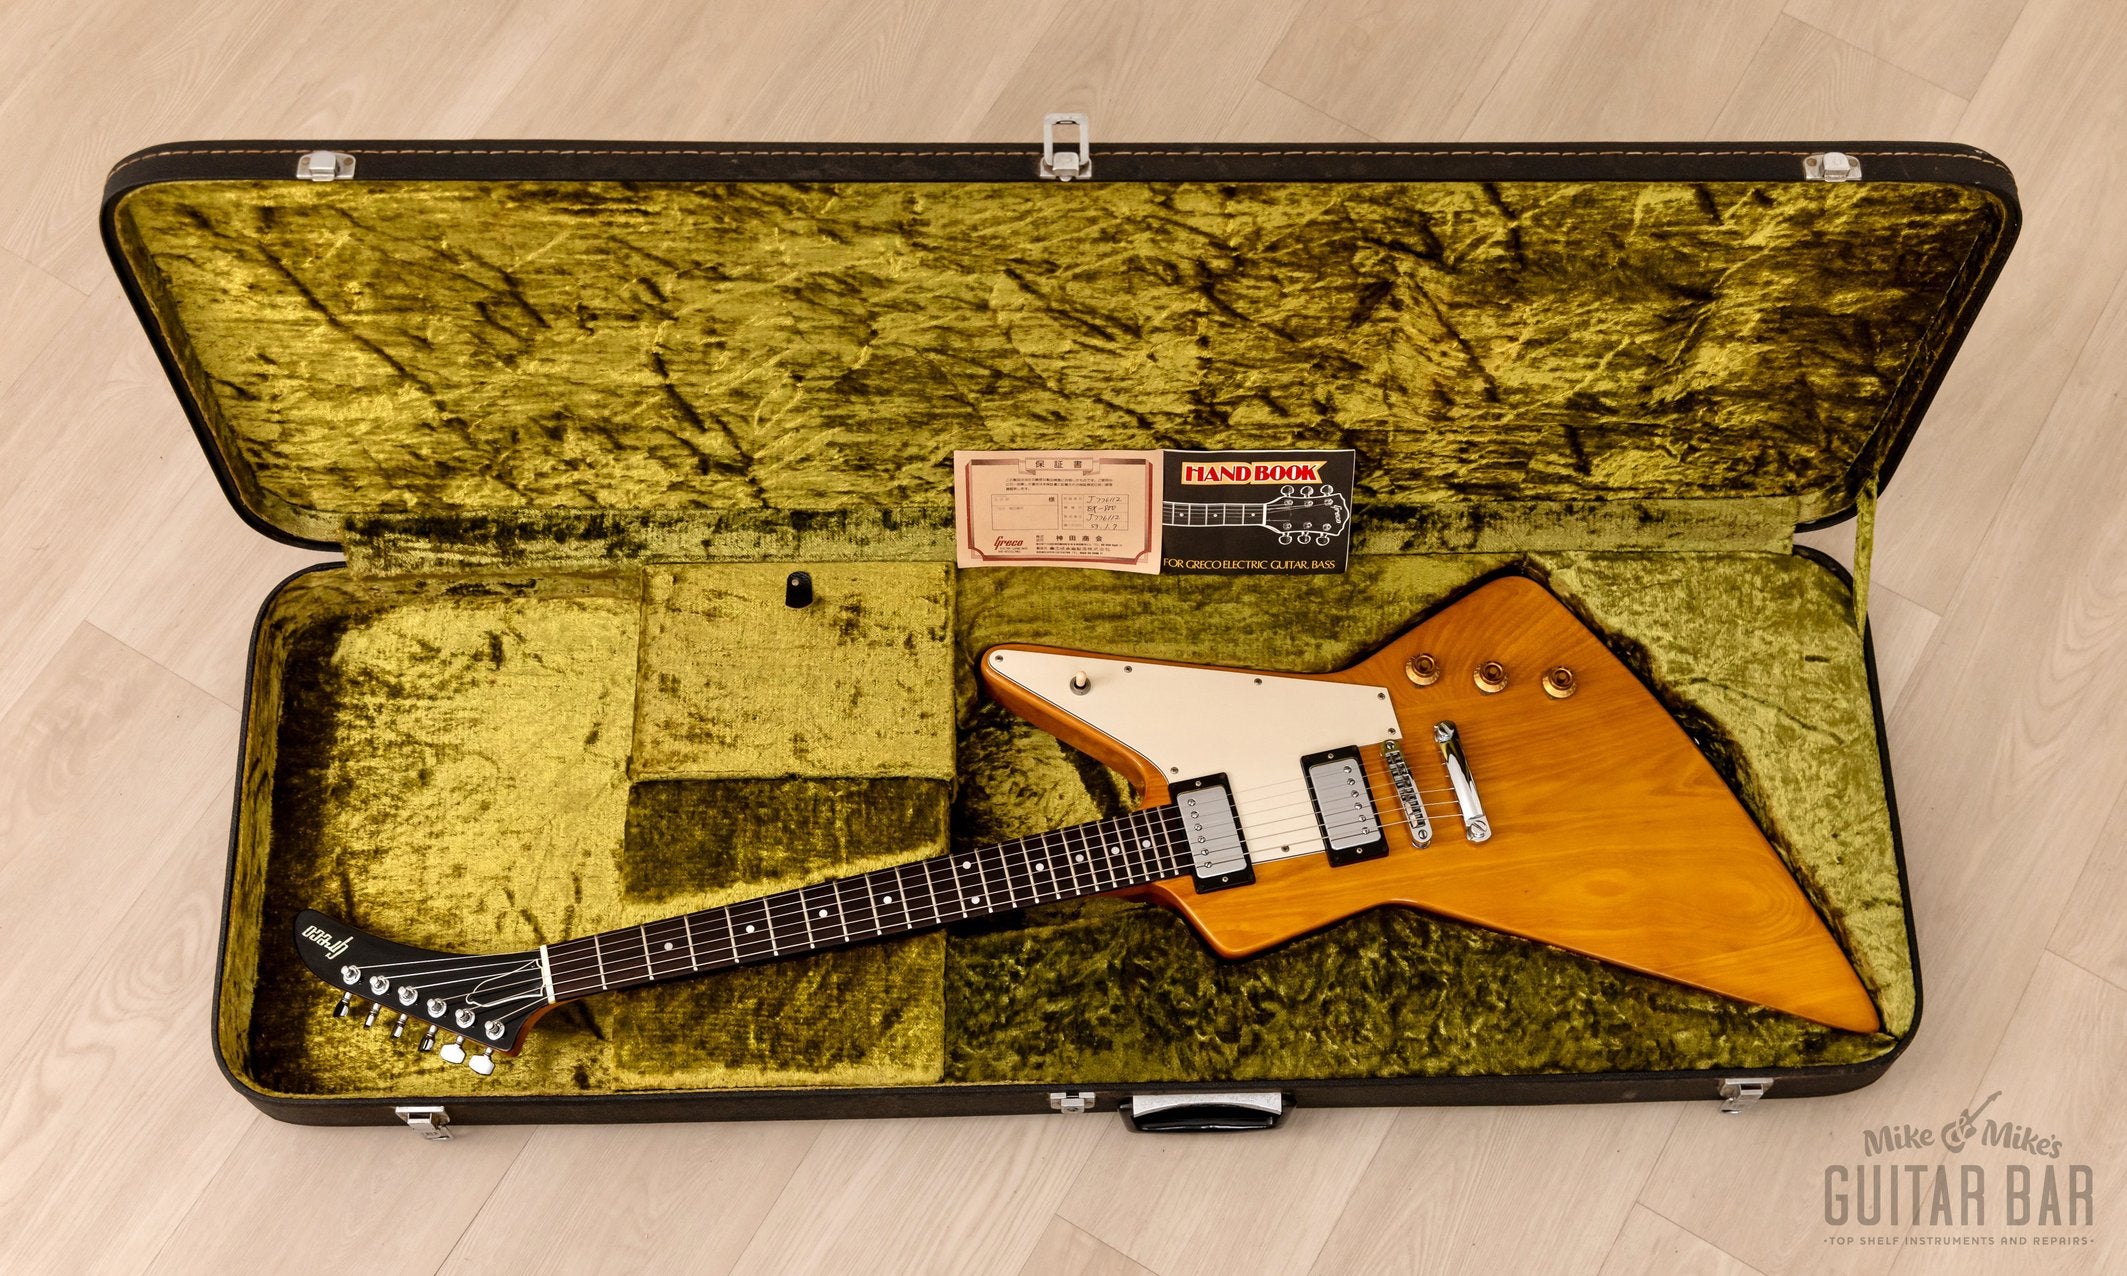 1977 Greco EX800 Explorer Vintage Electric Guitar, Destroyer 2459, Near-Mint w/ Case & Hangtags, Japan Fujigen